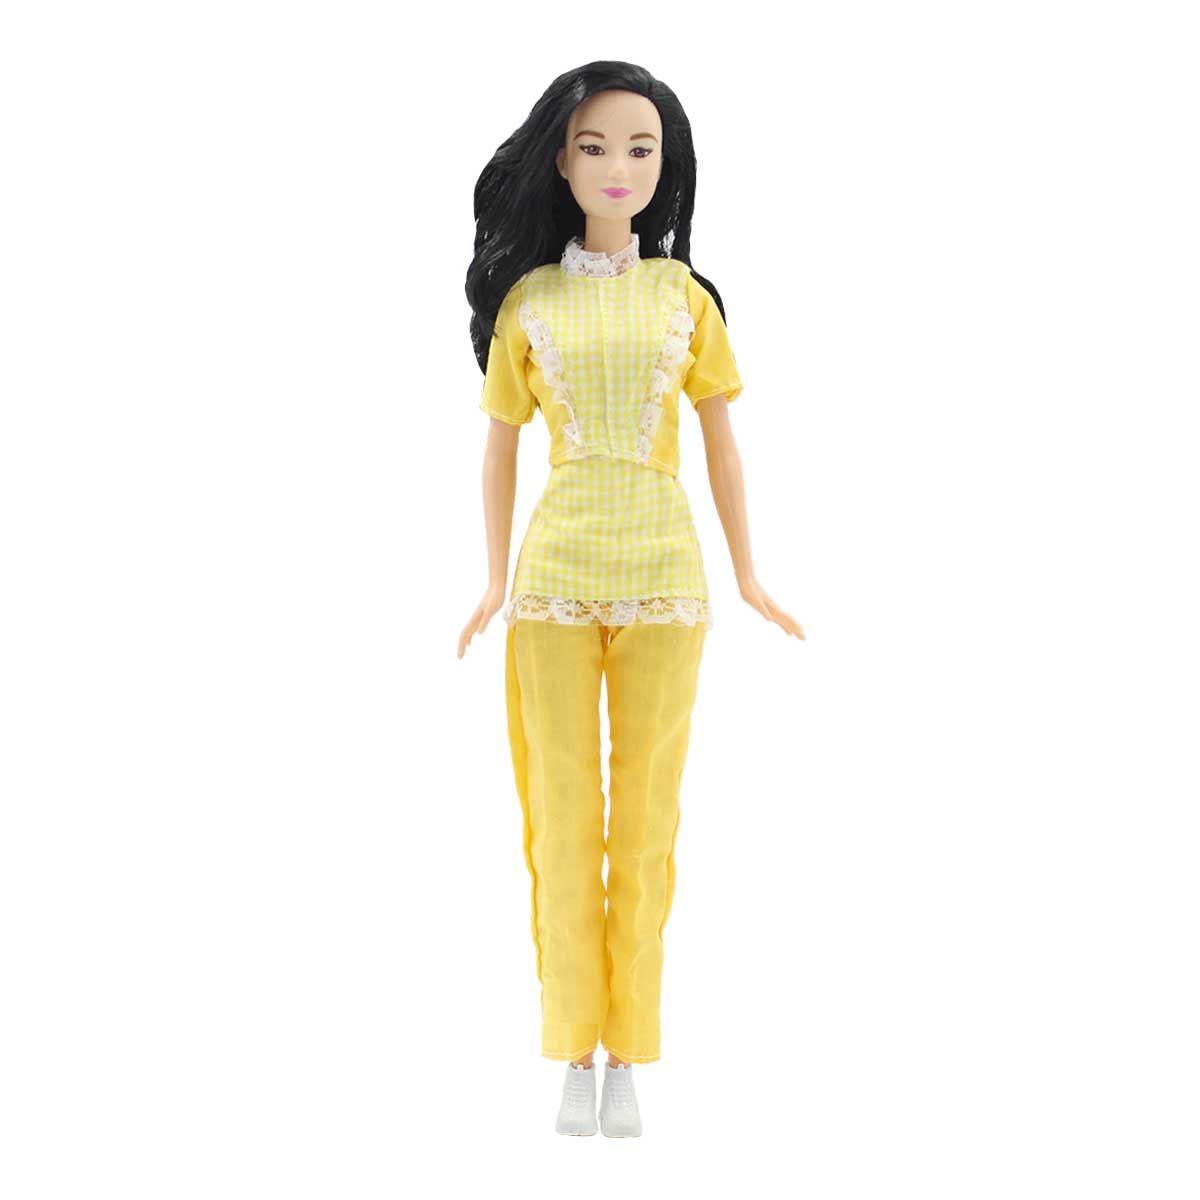 Одежда Dolls Accessories для Барби и других кукол 29 см Горничная желтый староста горничная том 10